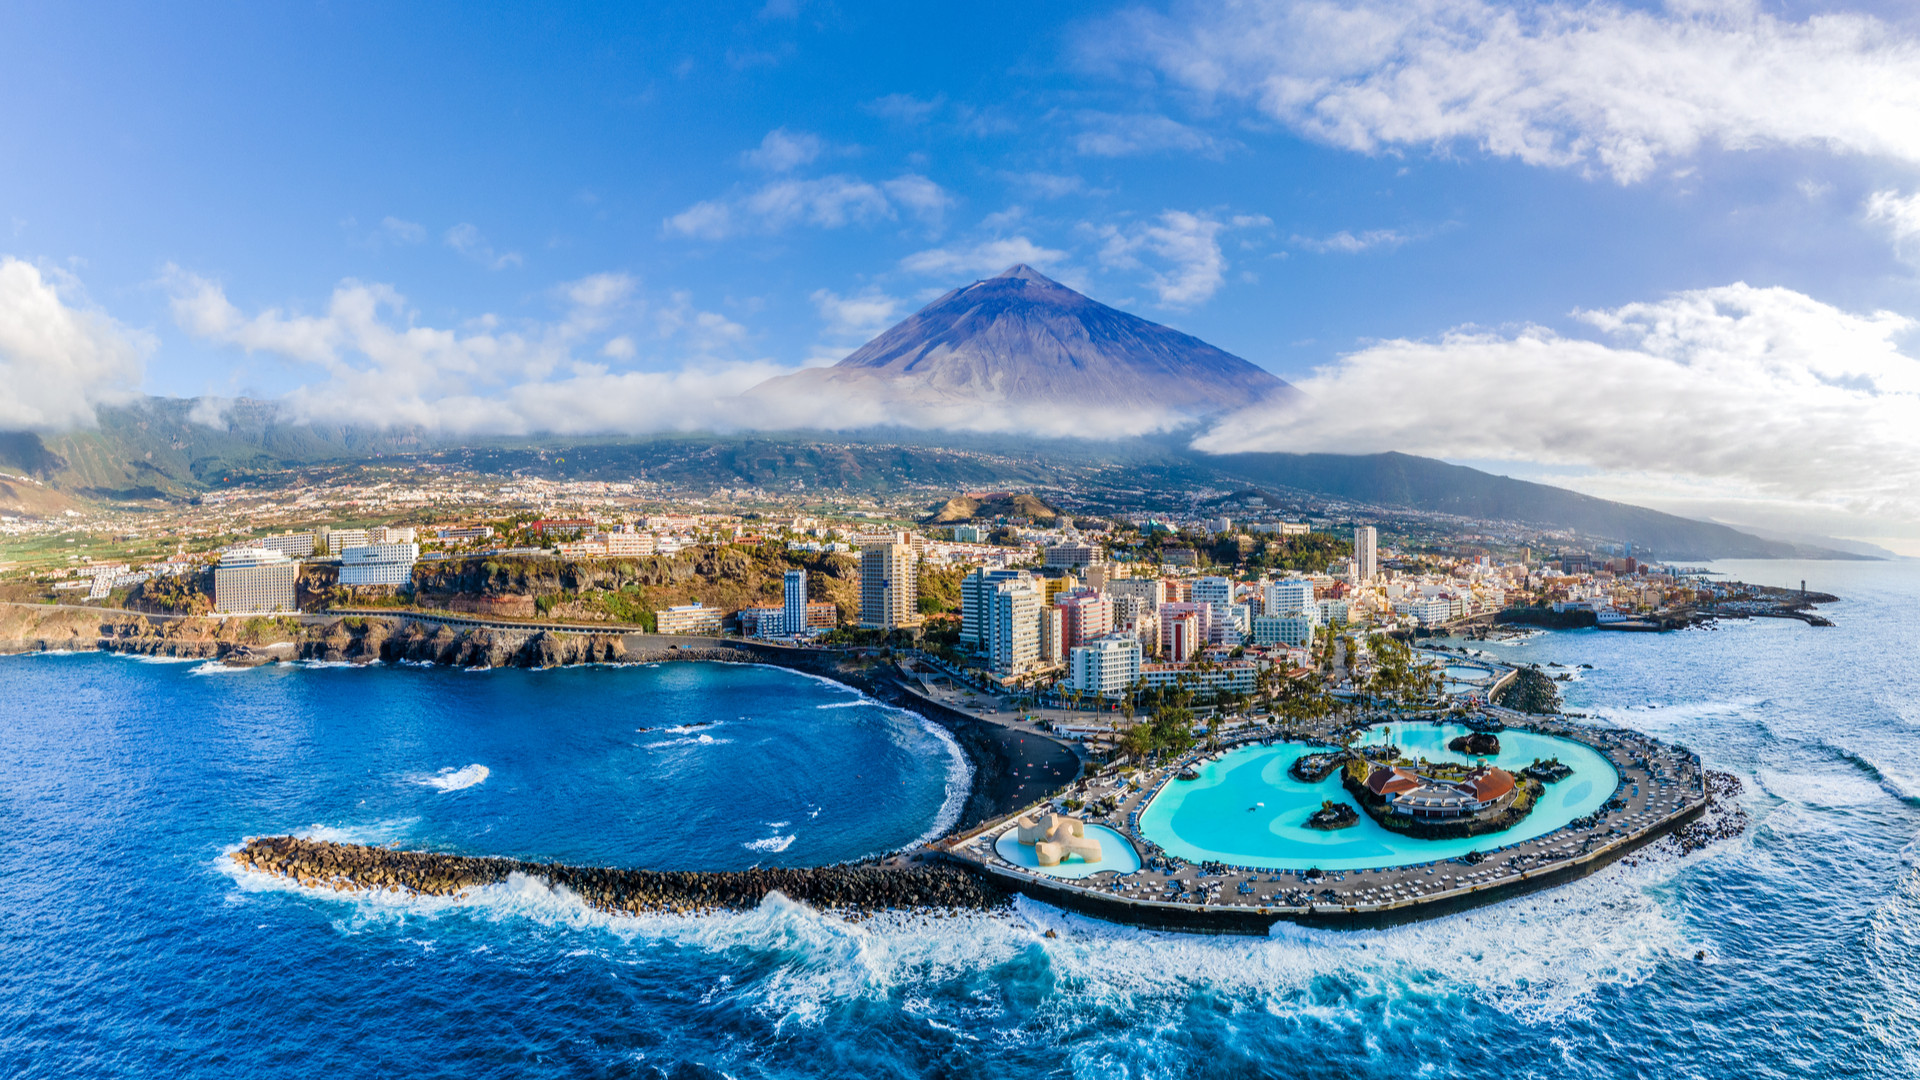 Vista aérea de la isla de Tenerife, Canarias. Foto: Shutterstock